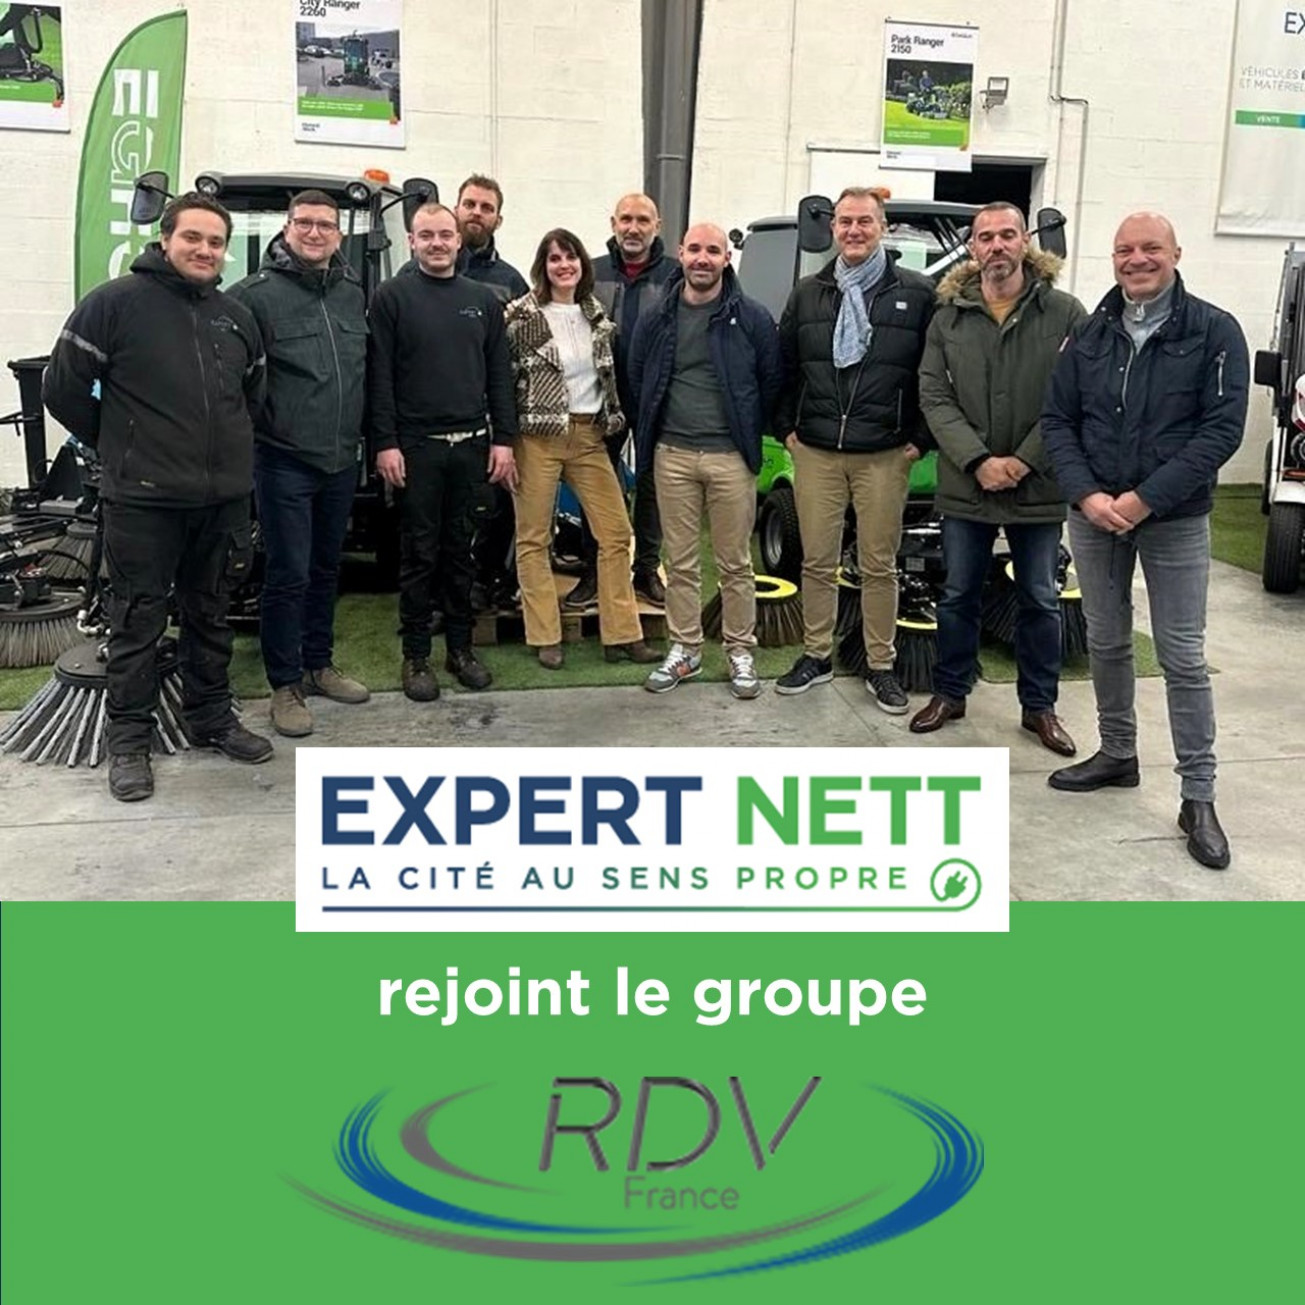 EXPERT NETT rejoint le groupe RDV France